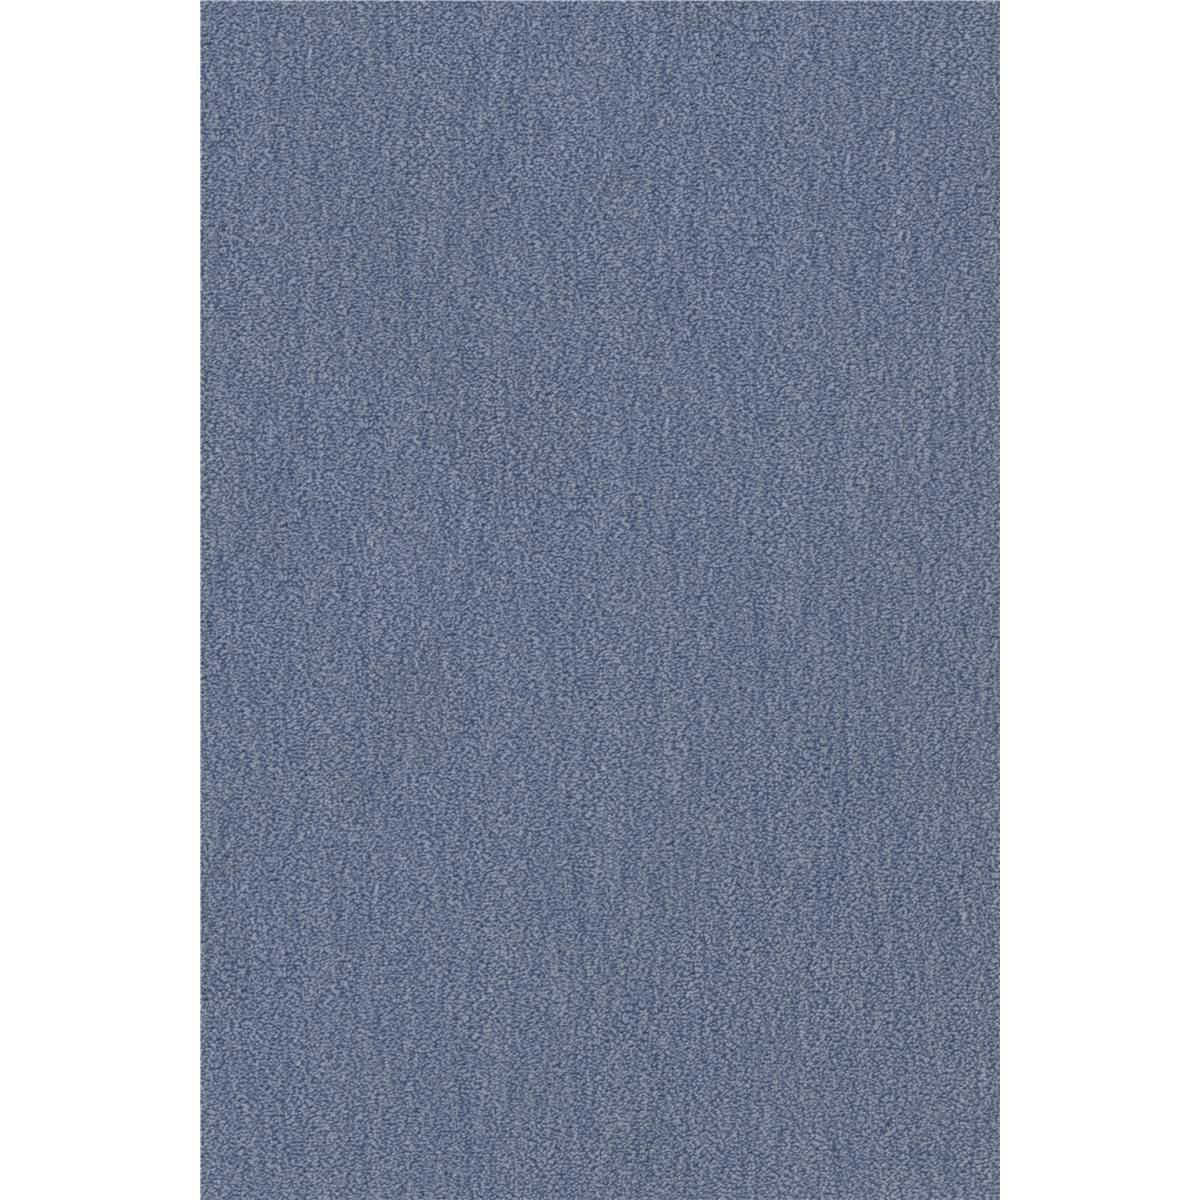 Teppichboden Vorwerk Passion 1002 NUTRIA MELANGE Velours Blau 3R13 - Rollenbreite 400 cm